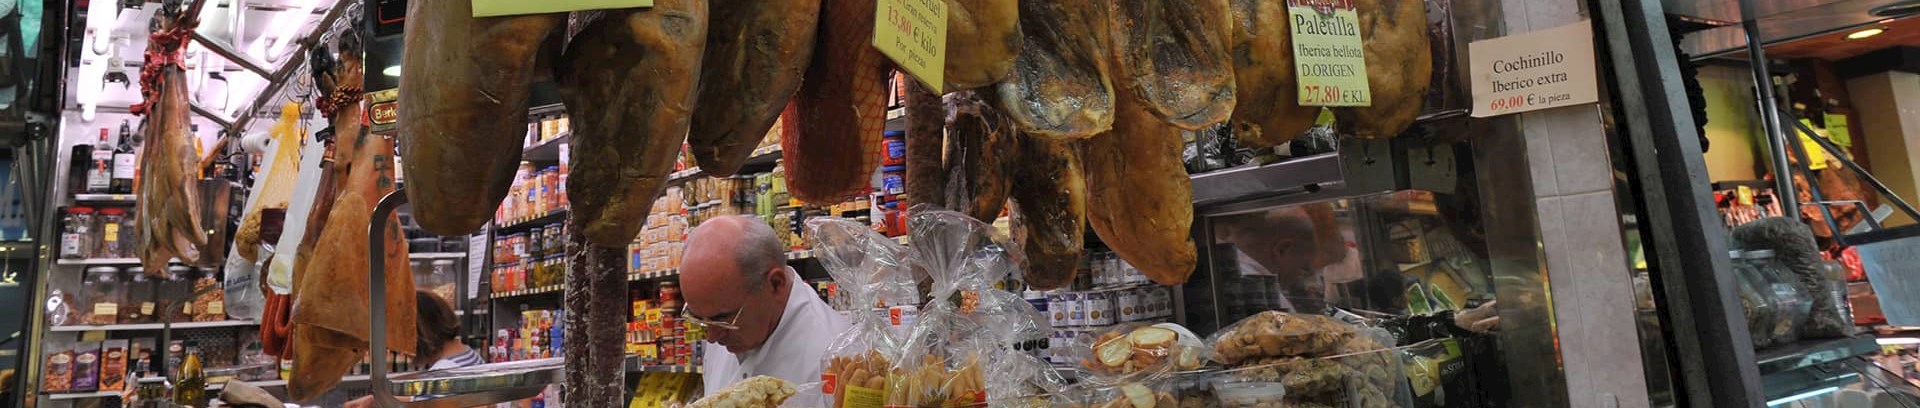 Billede af spansk slagterbutik med lufttørret skinke i udstillingen